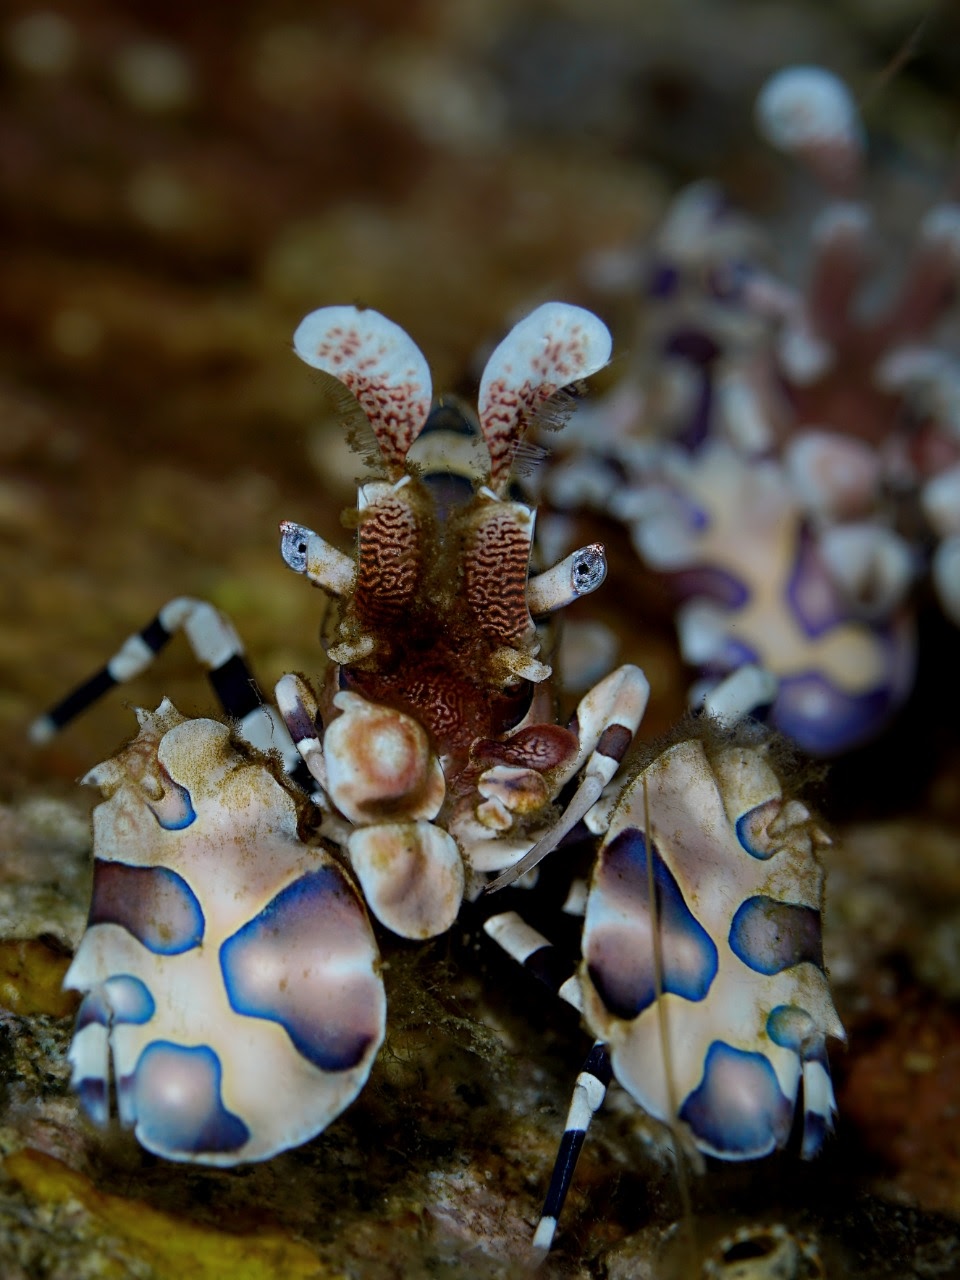 Mantis Shrimp found during a dive